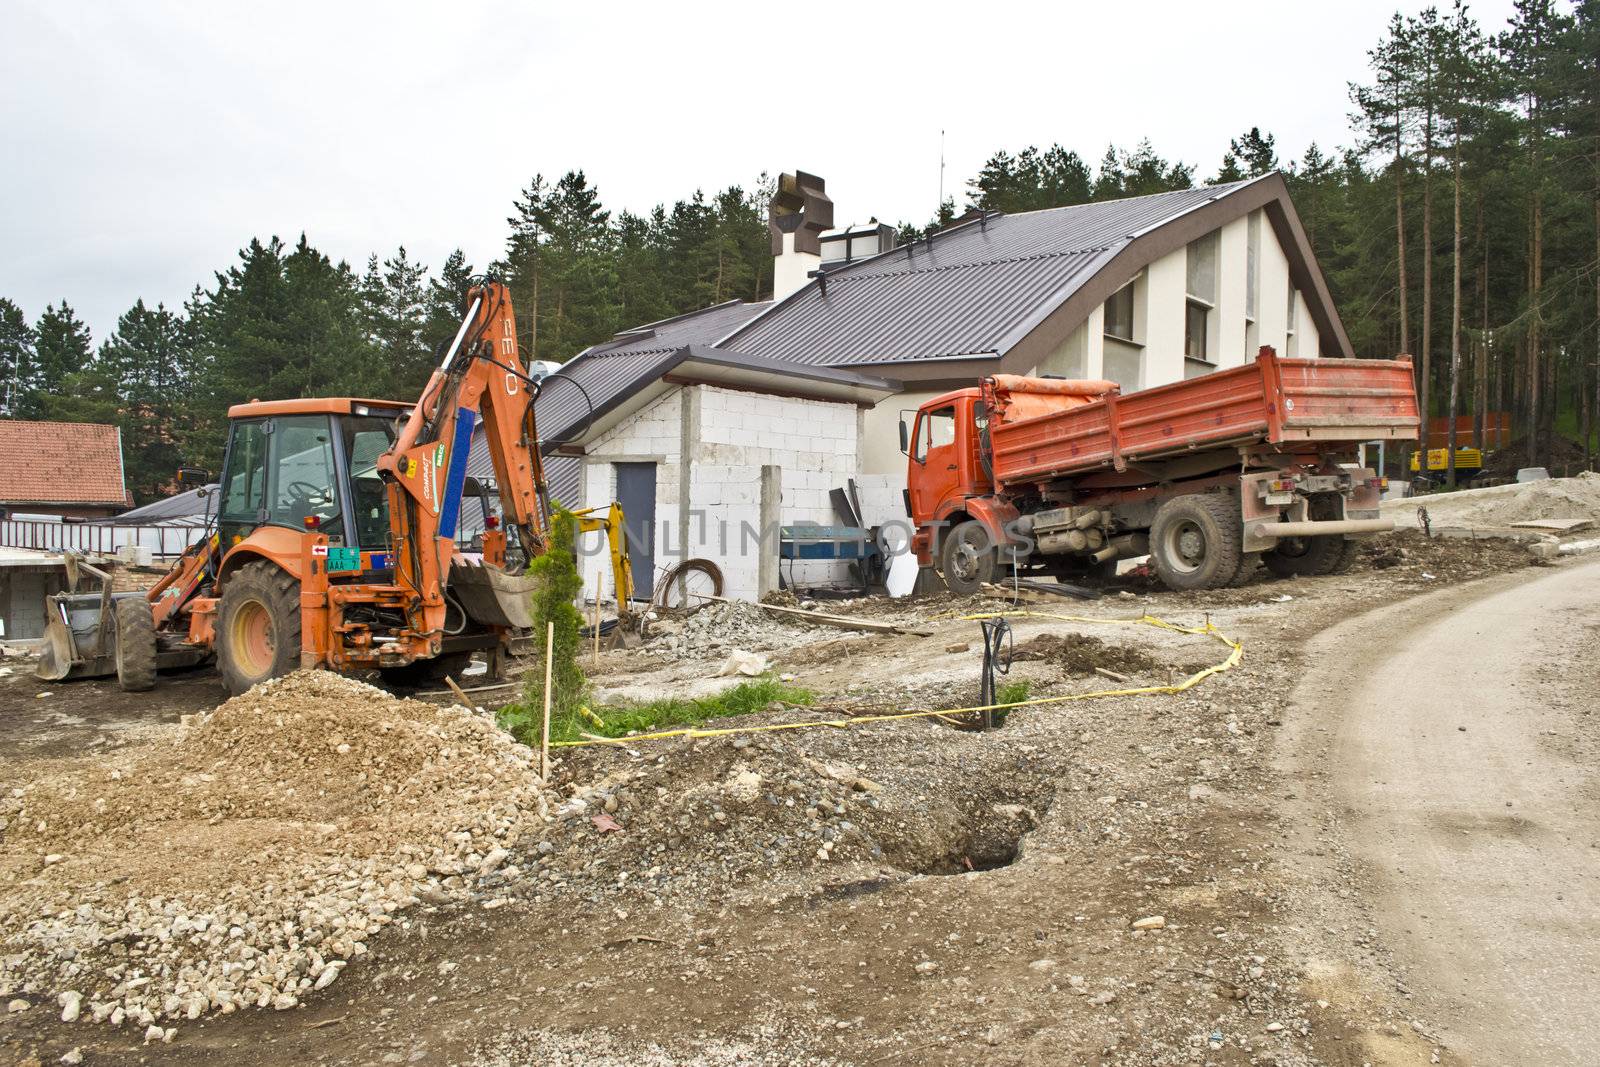 Excavator on site working,road repair,building house